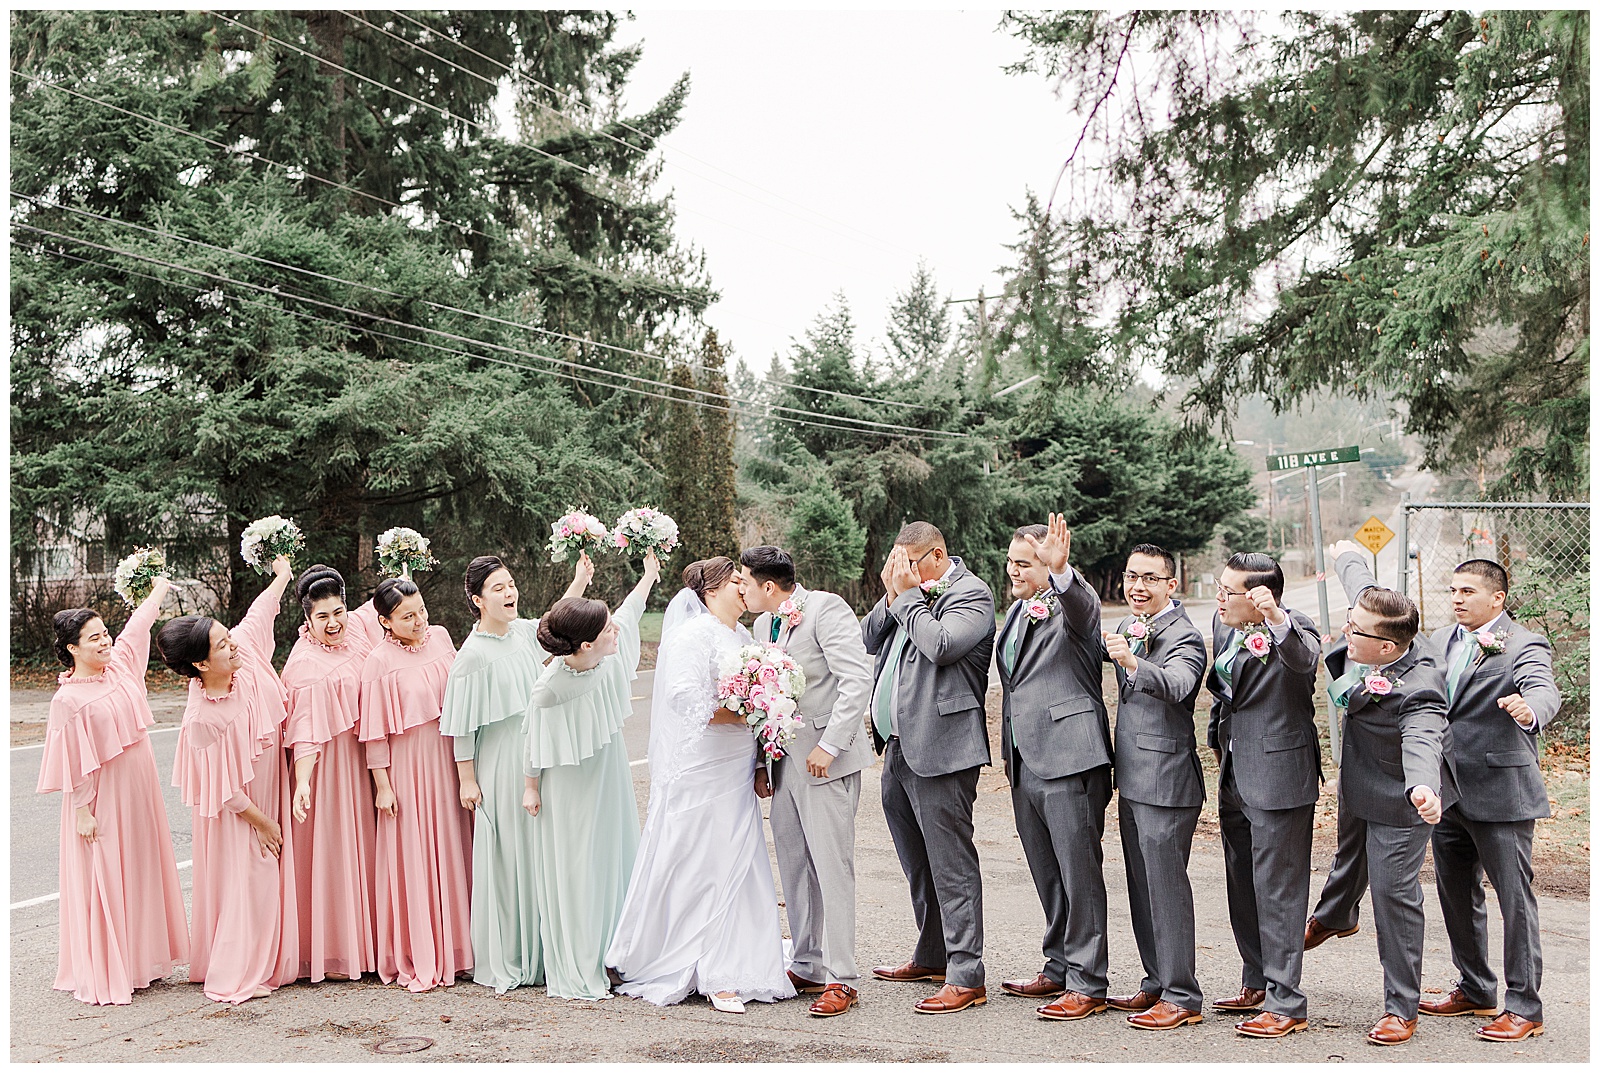 Bridal party celebrating at Apostolic Seattle wedding